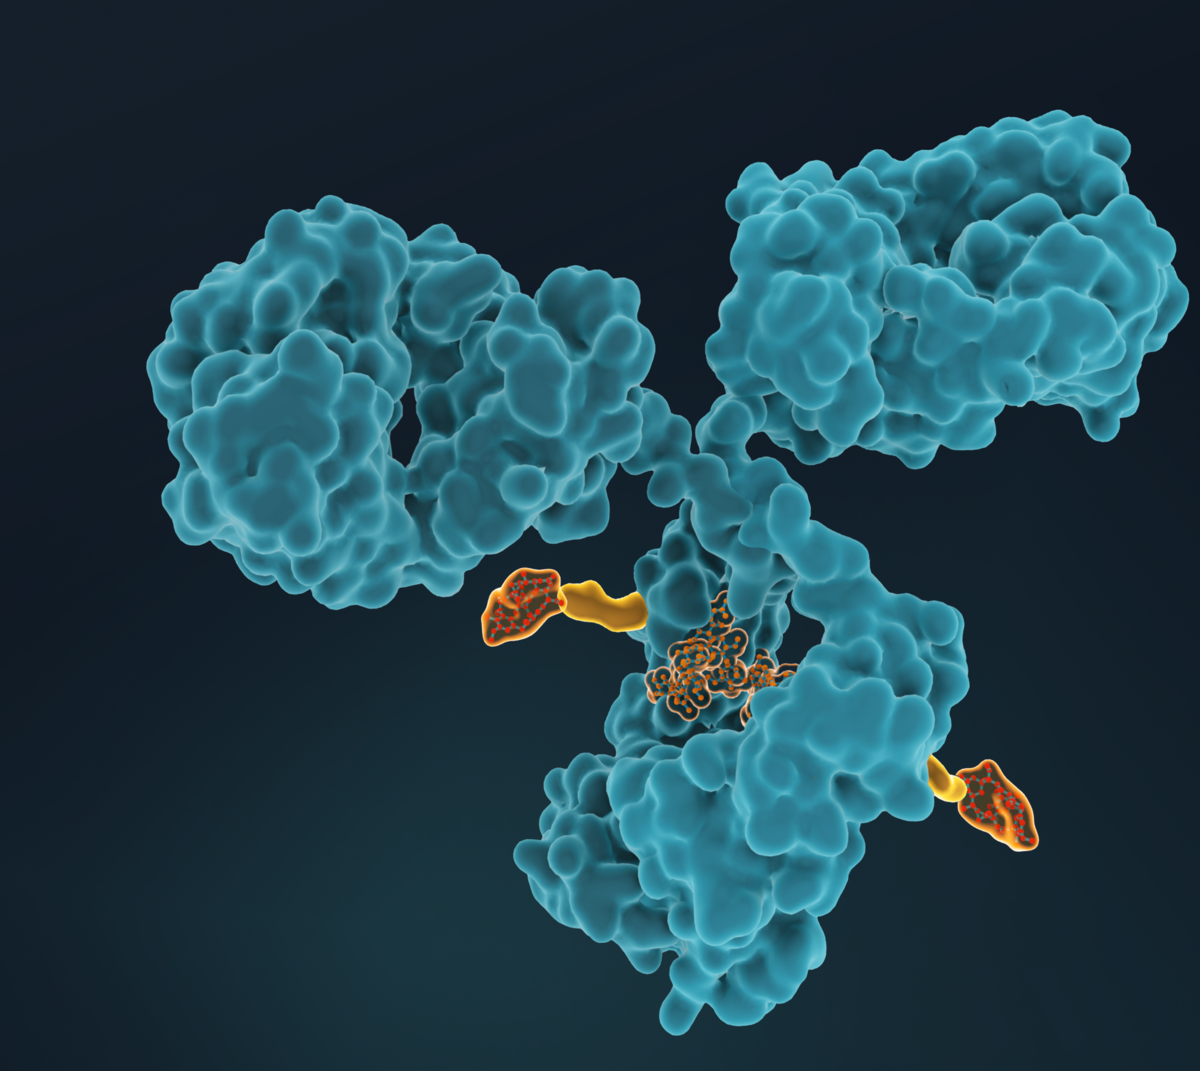 Les ADC (Antibody Drug Conjugates) sont constitués d'agents cytotoxiques très puissants conjugués à des anticorps par l'intermédiaire d'un lieur spécifique. Ce format moléculaire permet de délivrer de manière très sélective toute charge utile aux tissus malades, tout en épargnant les parties saines du corps humain.